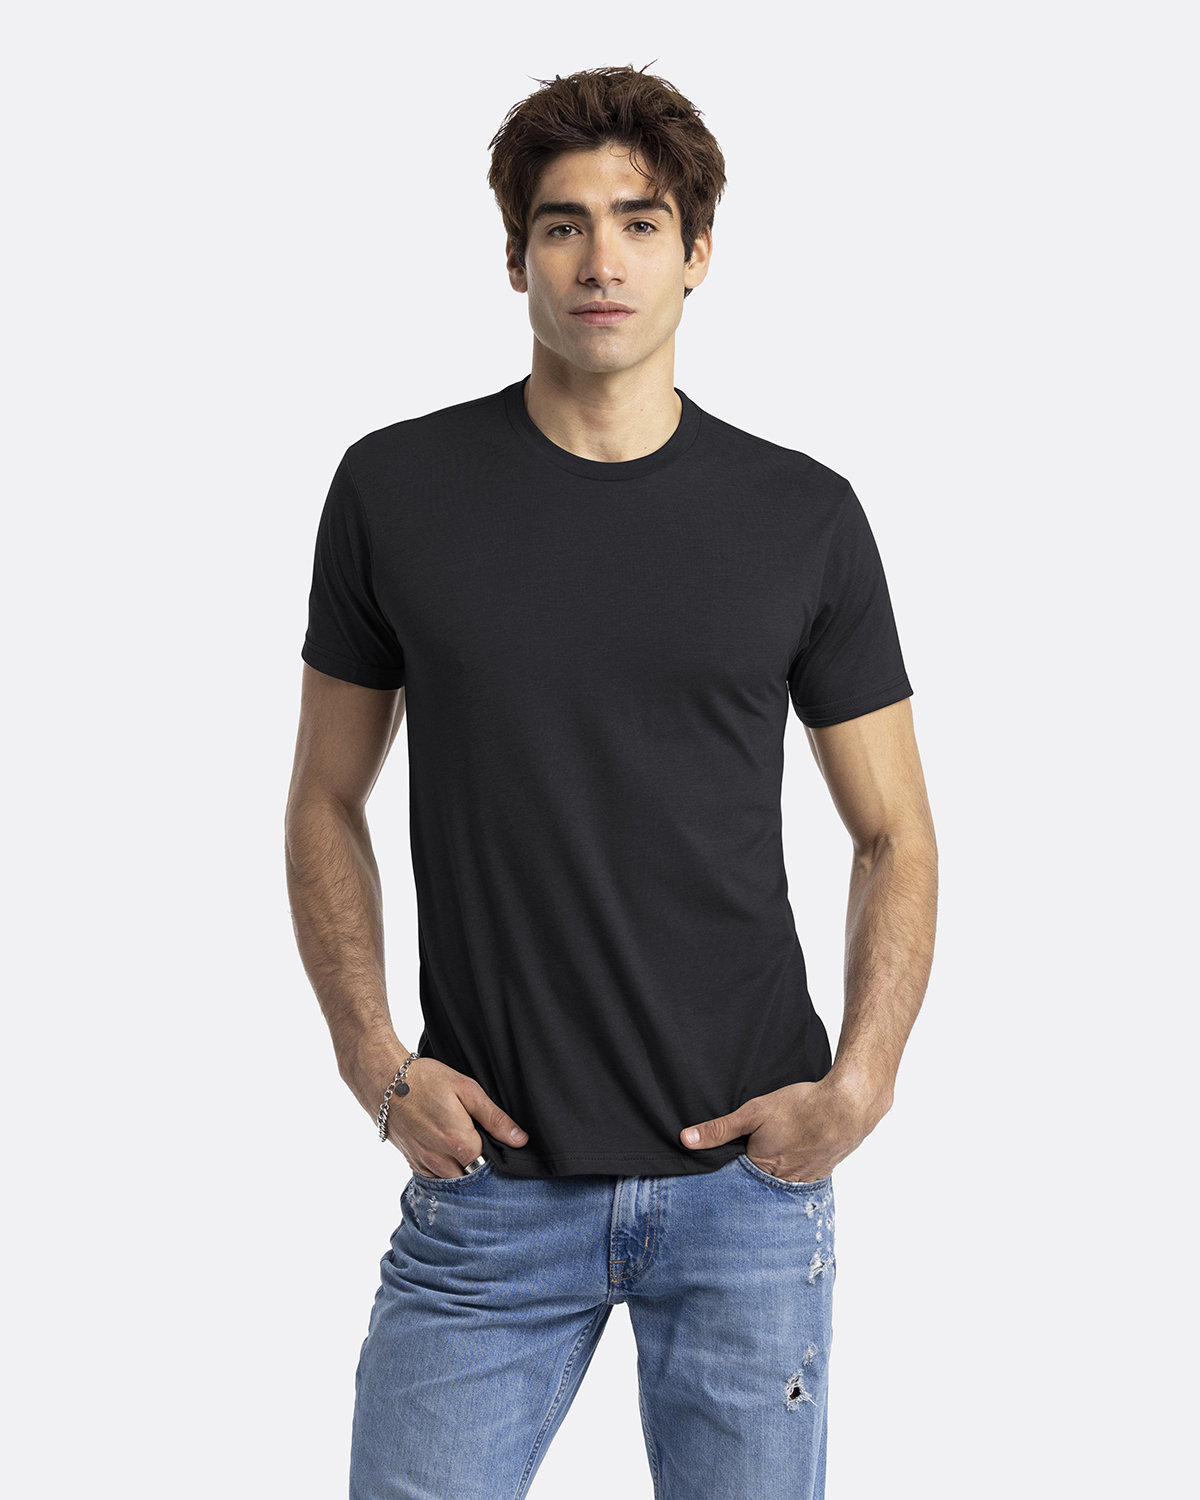 Buy Men's T-Shirt - Crew Neck & Get 20% Off